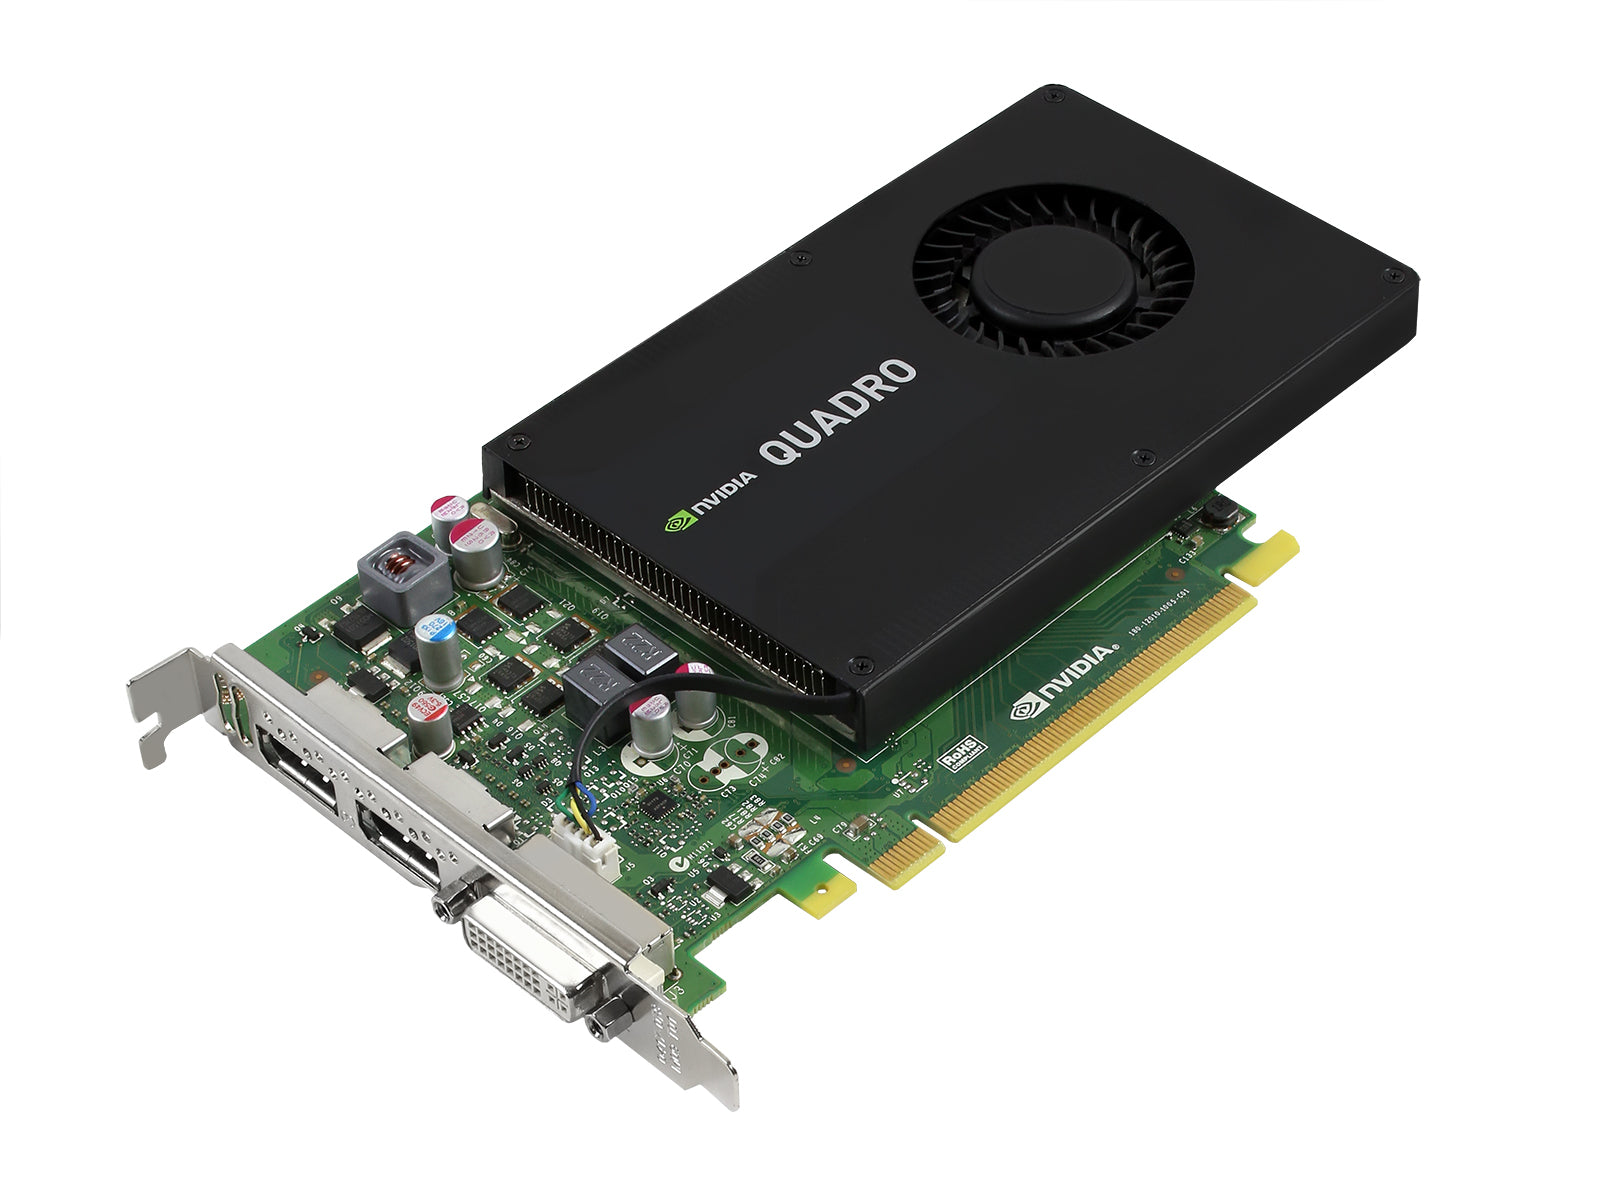 Tarjeta gráfica NVIDIA Quadro K2200 de 4 GB (VCQK2200-PB) Monitors.com